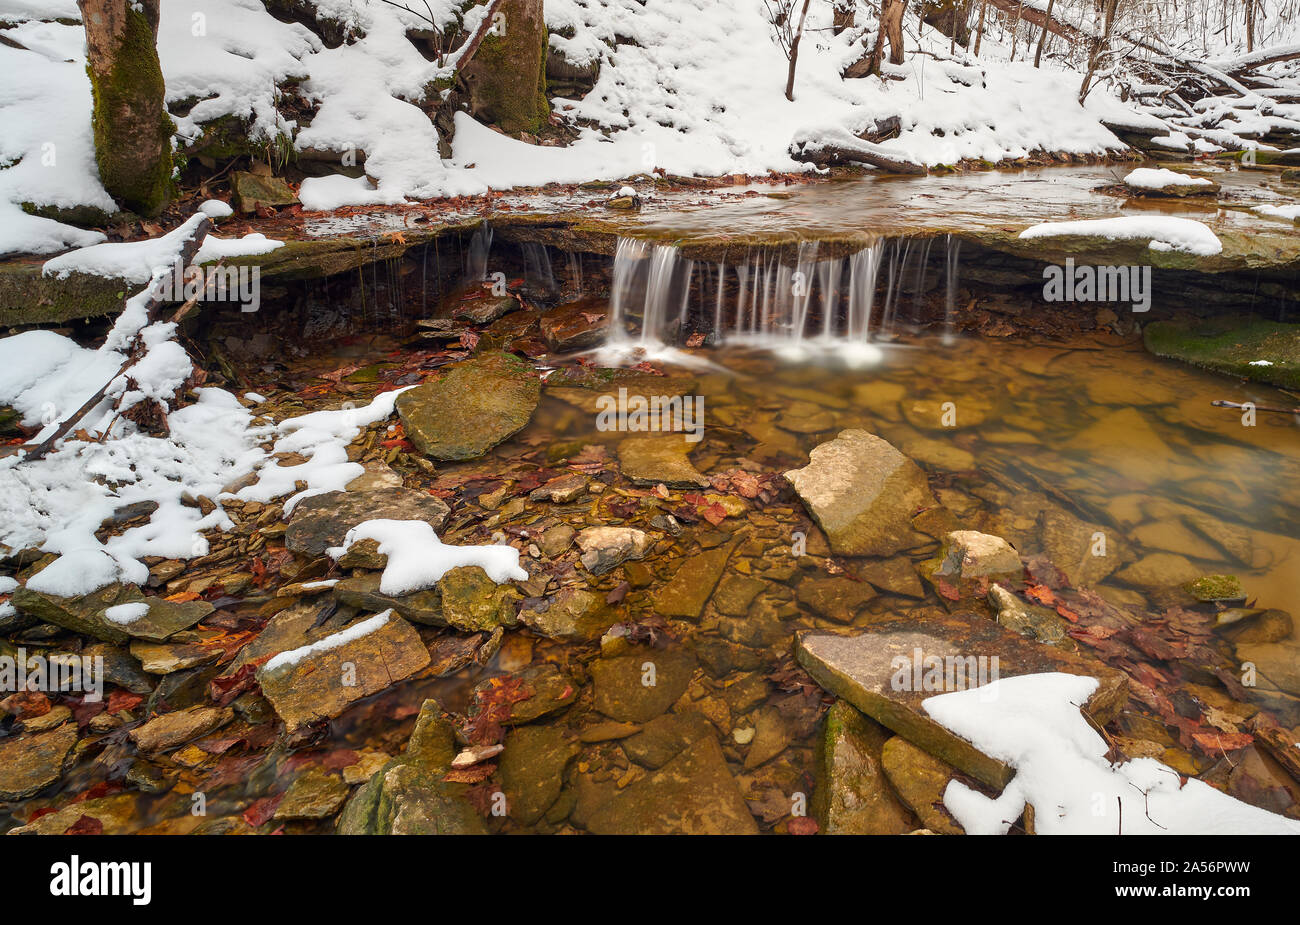 Una piccola cascata in una scena di neve. Foto Stock